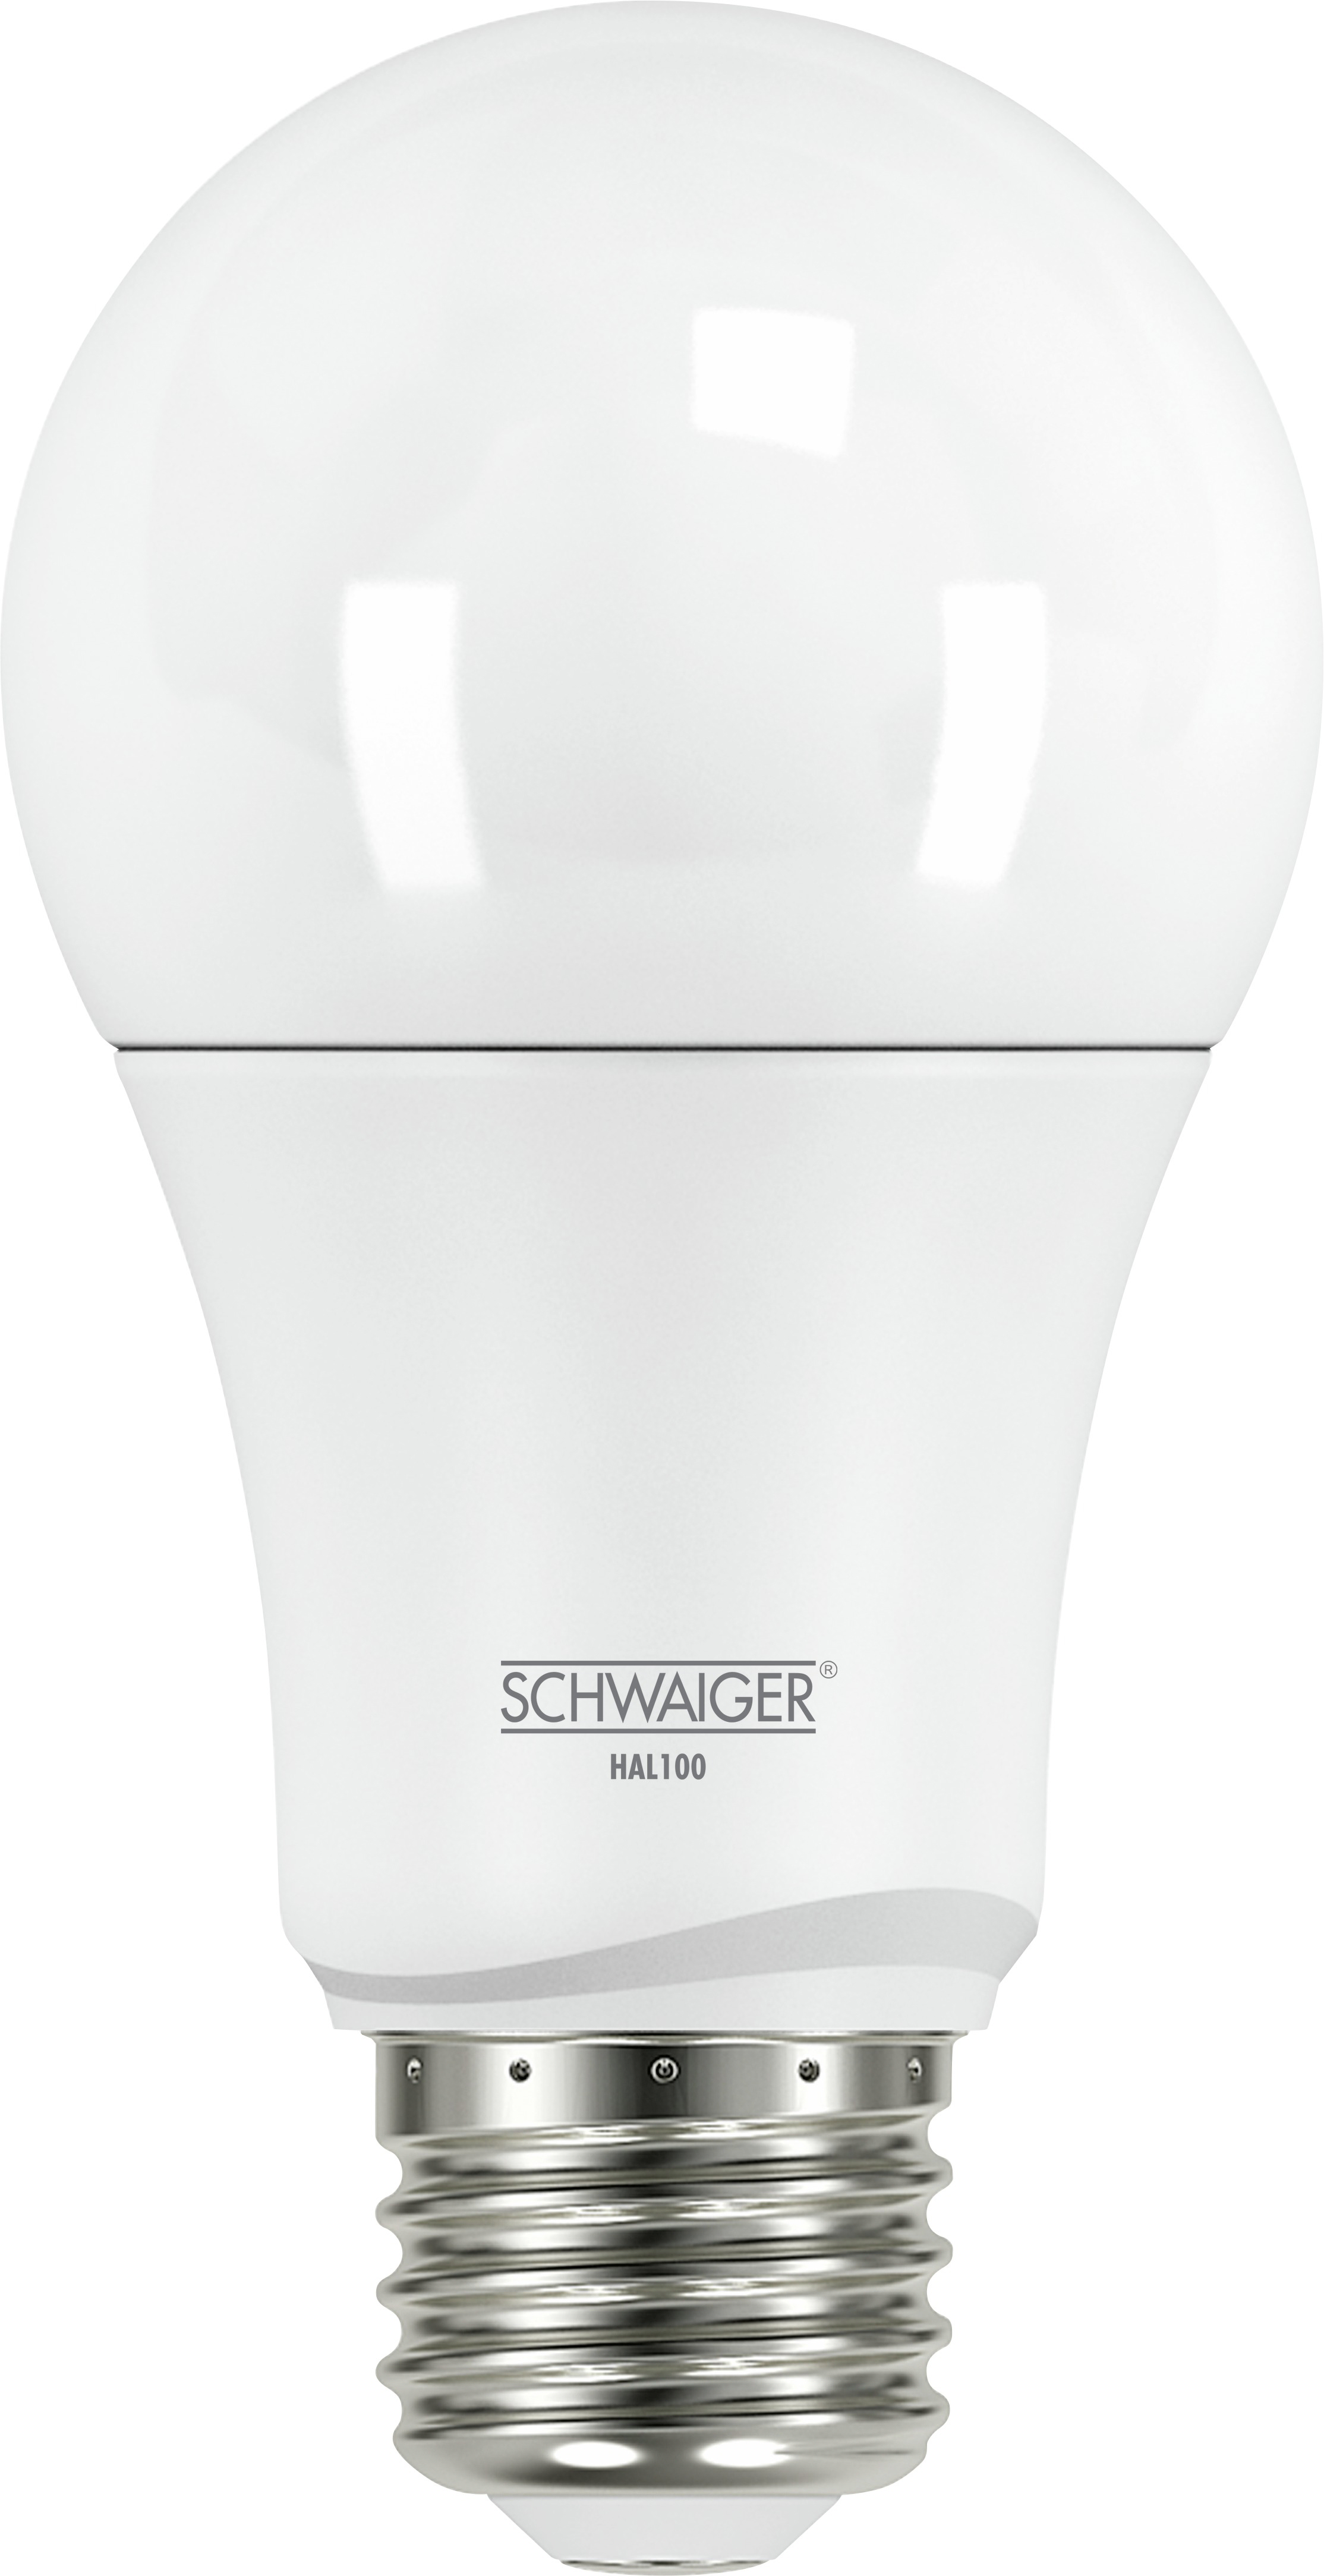 SCHWAIGER (E27) Warmweiß als dimmbares Wohnlicht LED Leuchtmittel -HAL100-